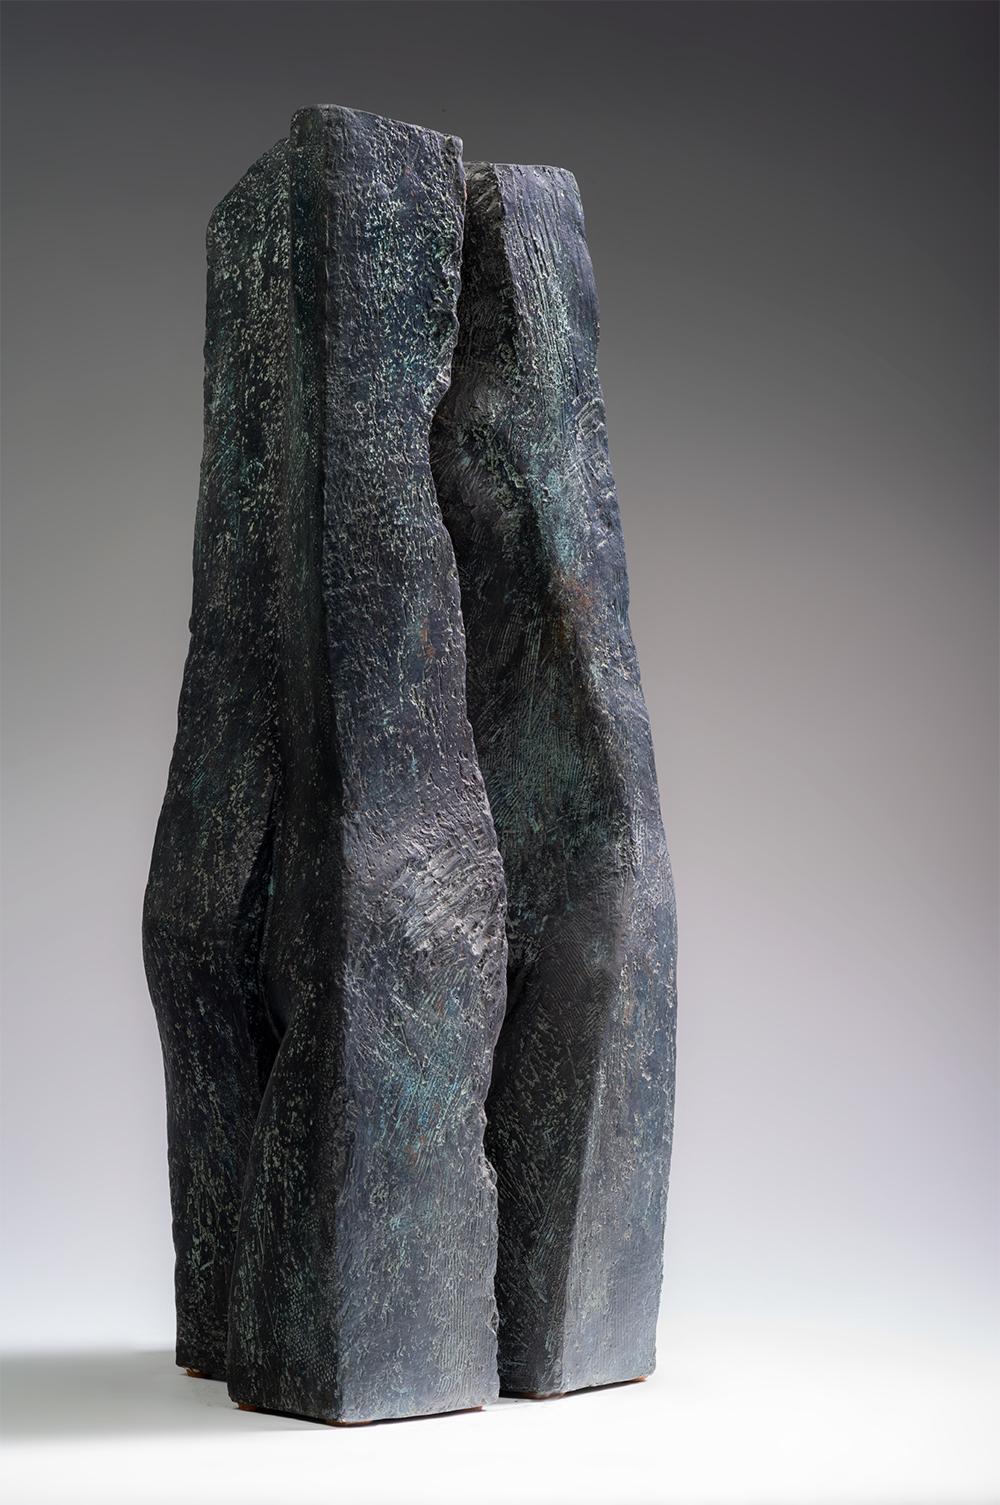 Duo est une sculpture en bronze de l'artiste contemporaine française Martine Demal, dont les dimensions sont de 48 × 20 × 22 cm (18,9 × 7,9 × 8,7 in).  
La sculpture est signée et numérotée, elle fait partie d'une édition limitée à 8 exemplaires + 4